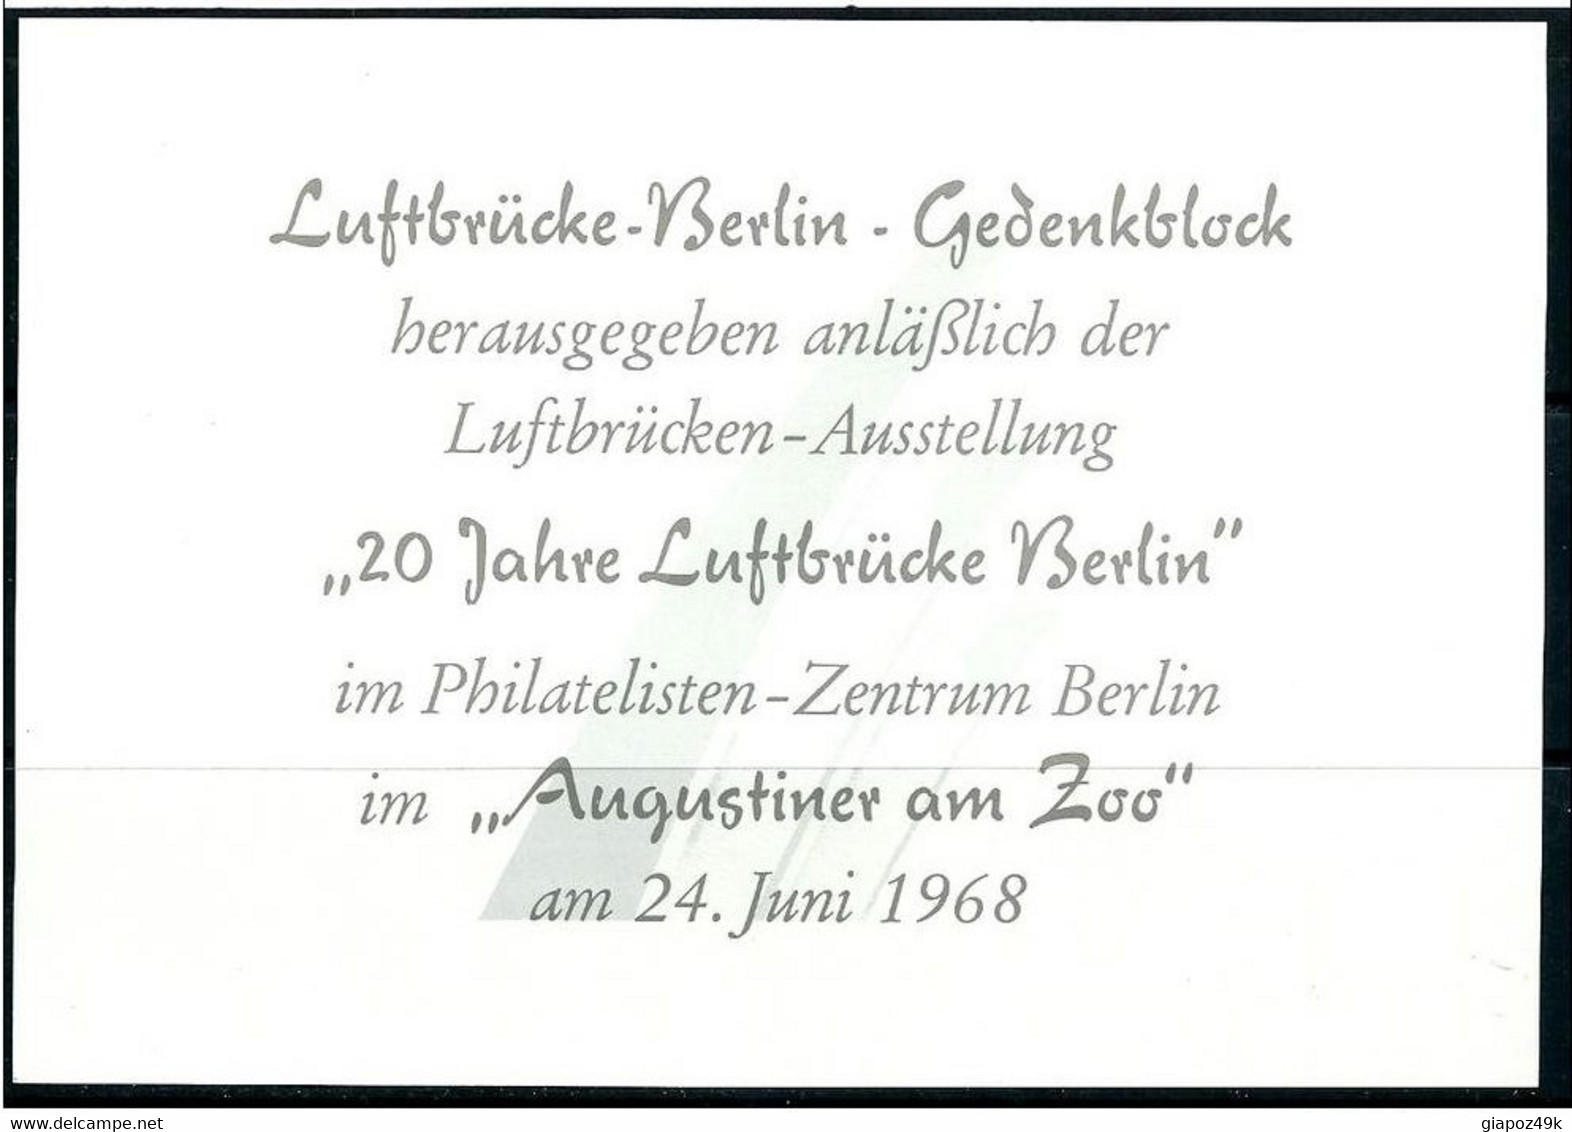 ● GERMANIA BERLIN 1958 ?  BURGHERMEISTER  Erinnofilia  Nuovo ** ️ Lotto N. 4724 ️ - Etiquettes 'Recommandé' & 'Valeur Déclarée'